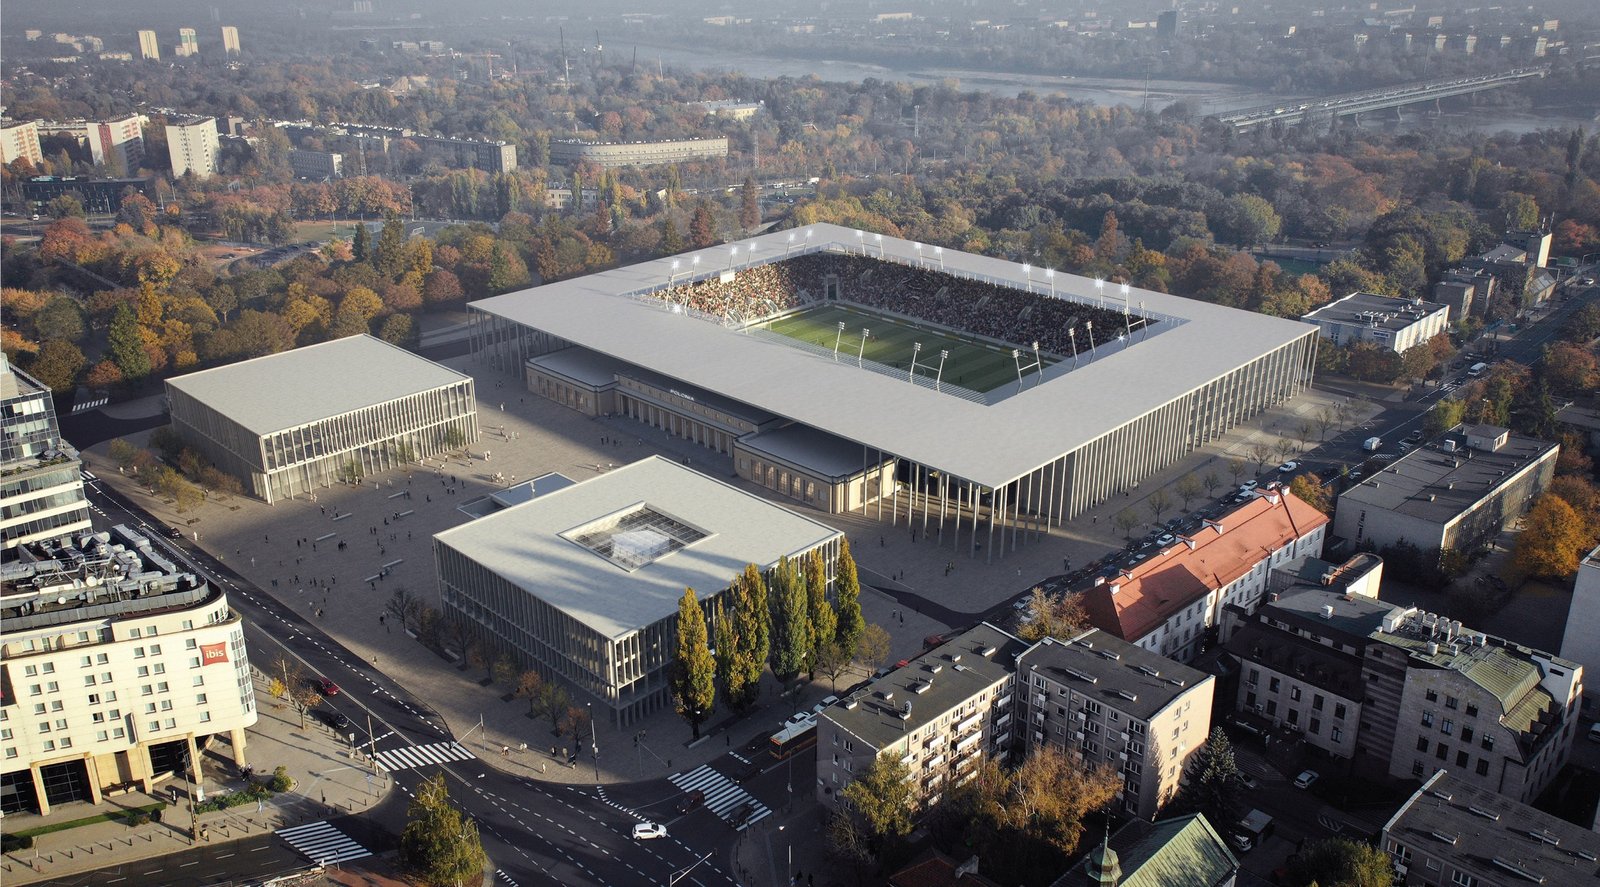 Polonia Warszawa's stadium in central Warsaw, Konwiktorska St.